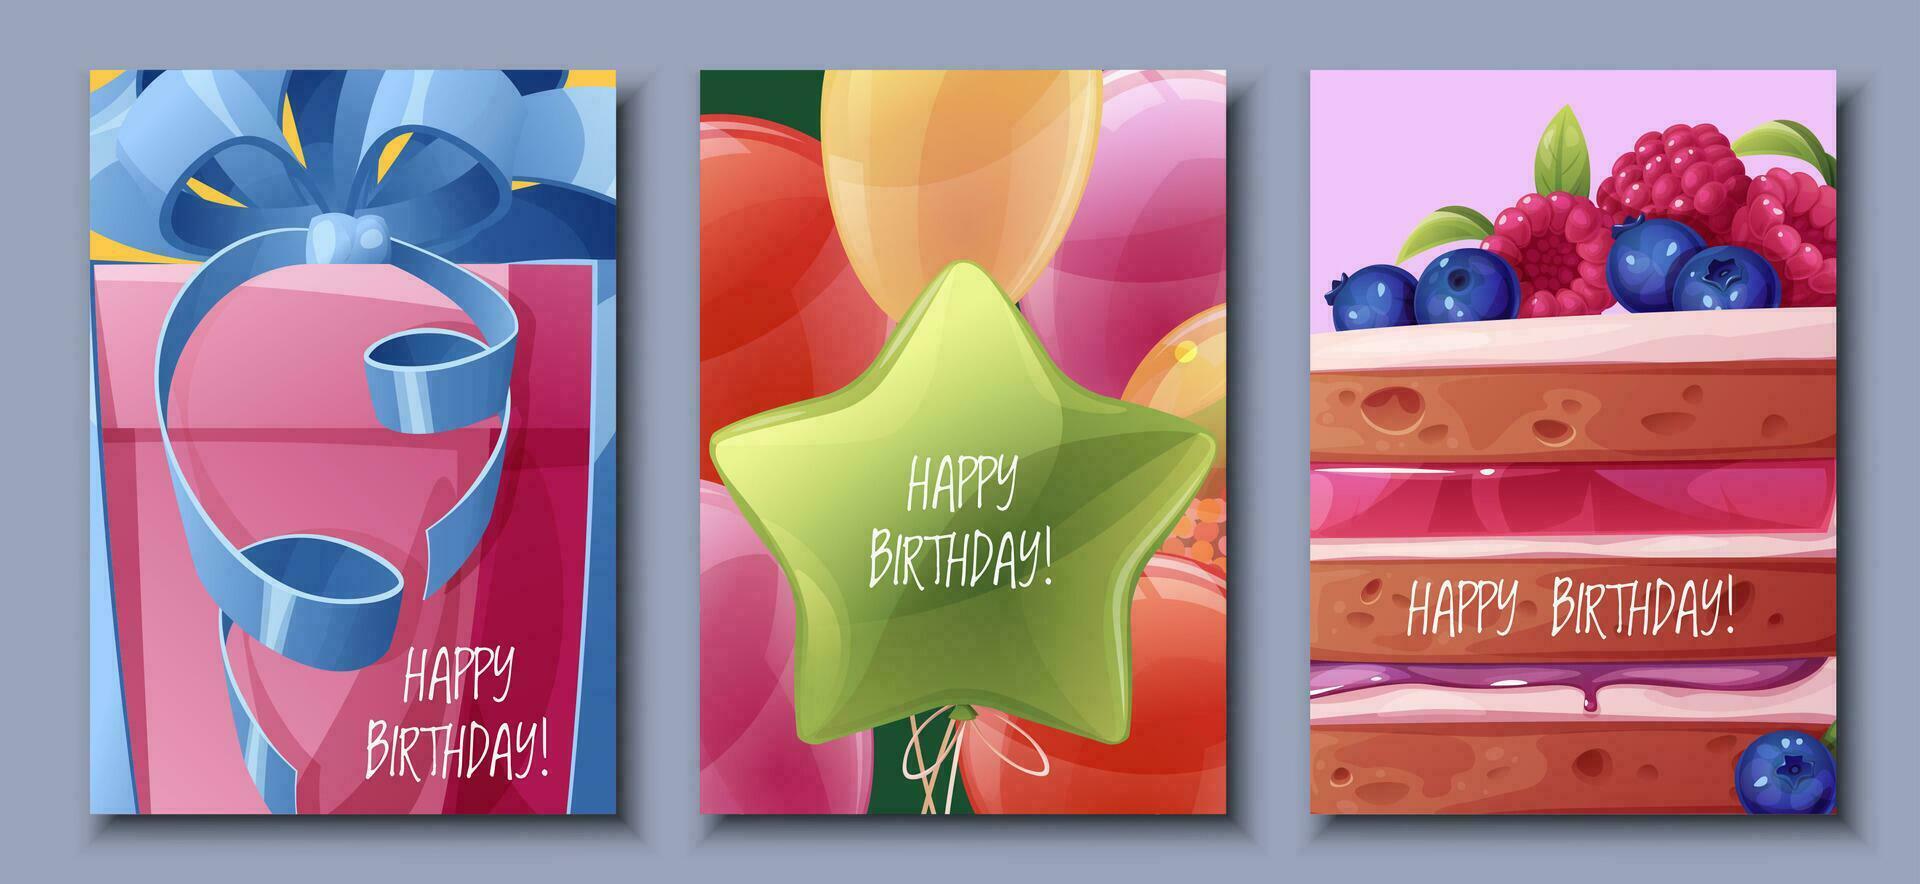 conjunto cumpleaños saludo tarjeta diseño. bandera, volantes modelo con pastel, globos, regalo caja con arco. contento cumpleaños invitación diseño para día festivo, aniversario, fiesta vector